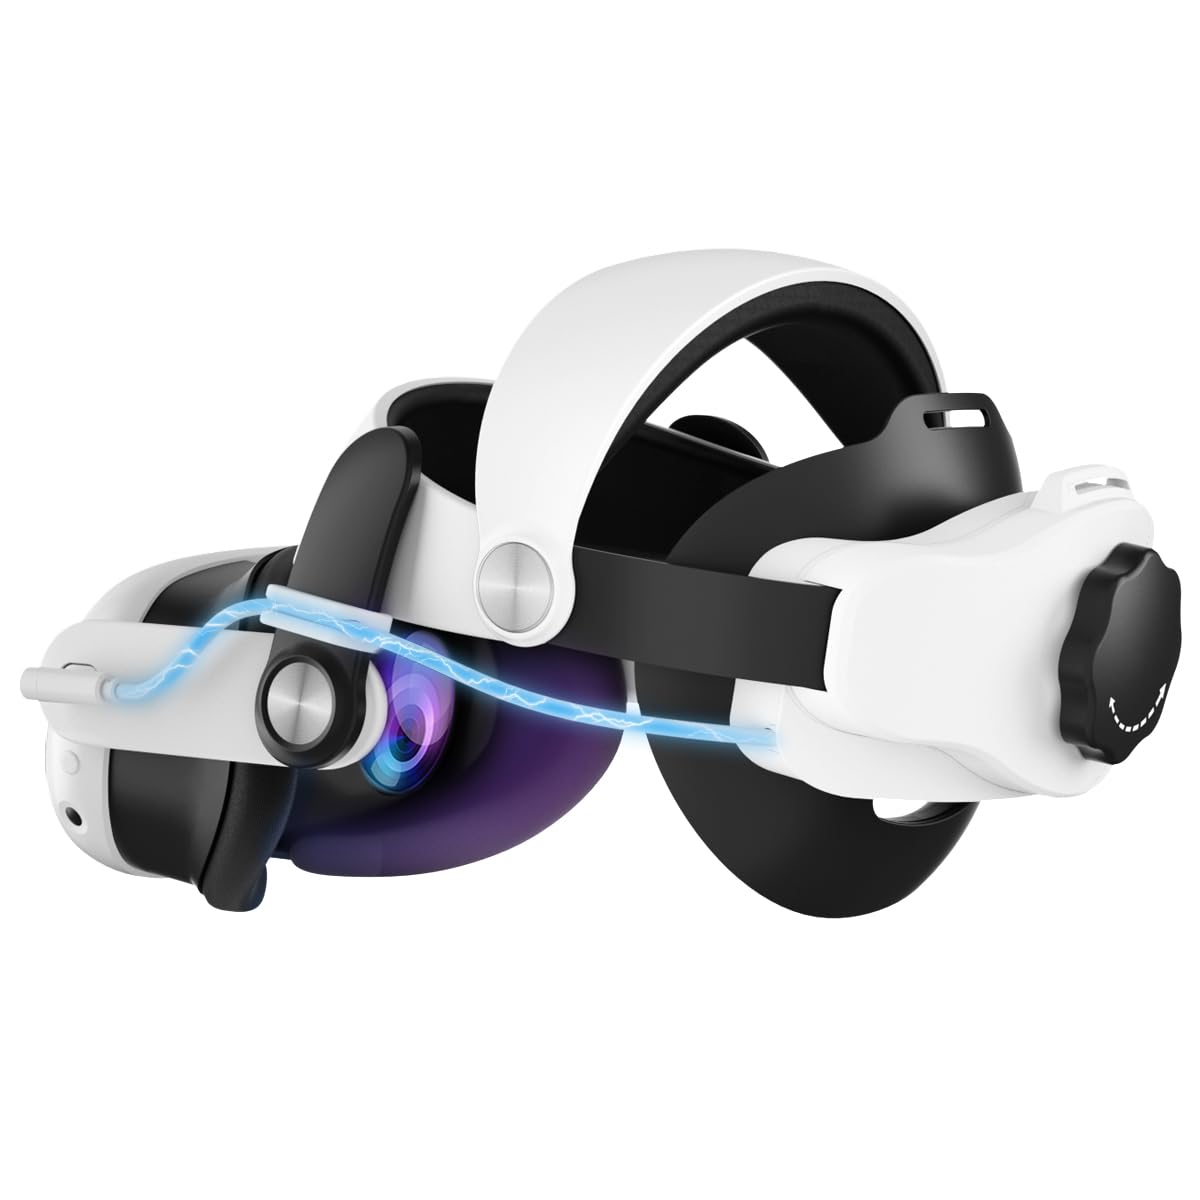 Adicop Elite Strap Review: Ultimativer VR Komfort und mehr Akku?